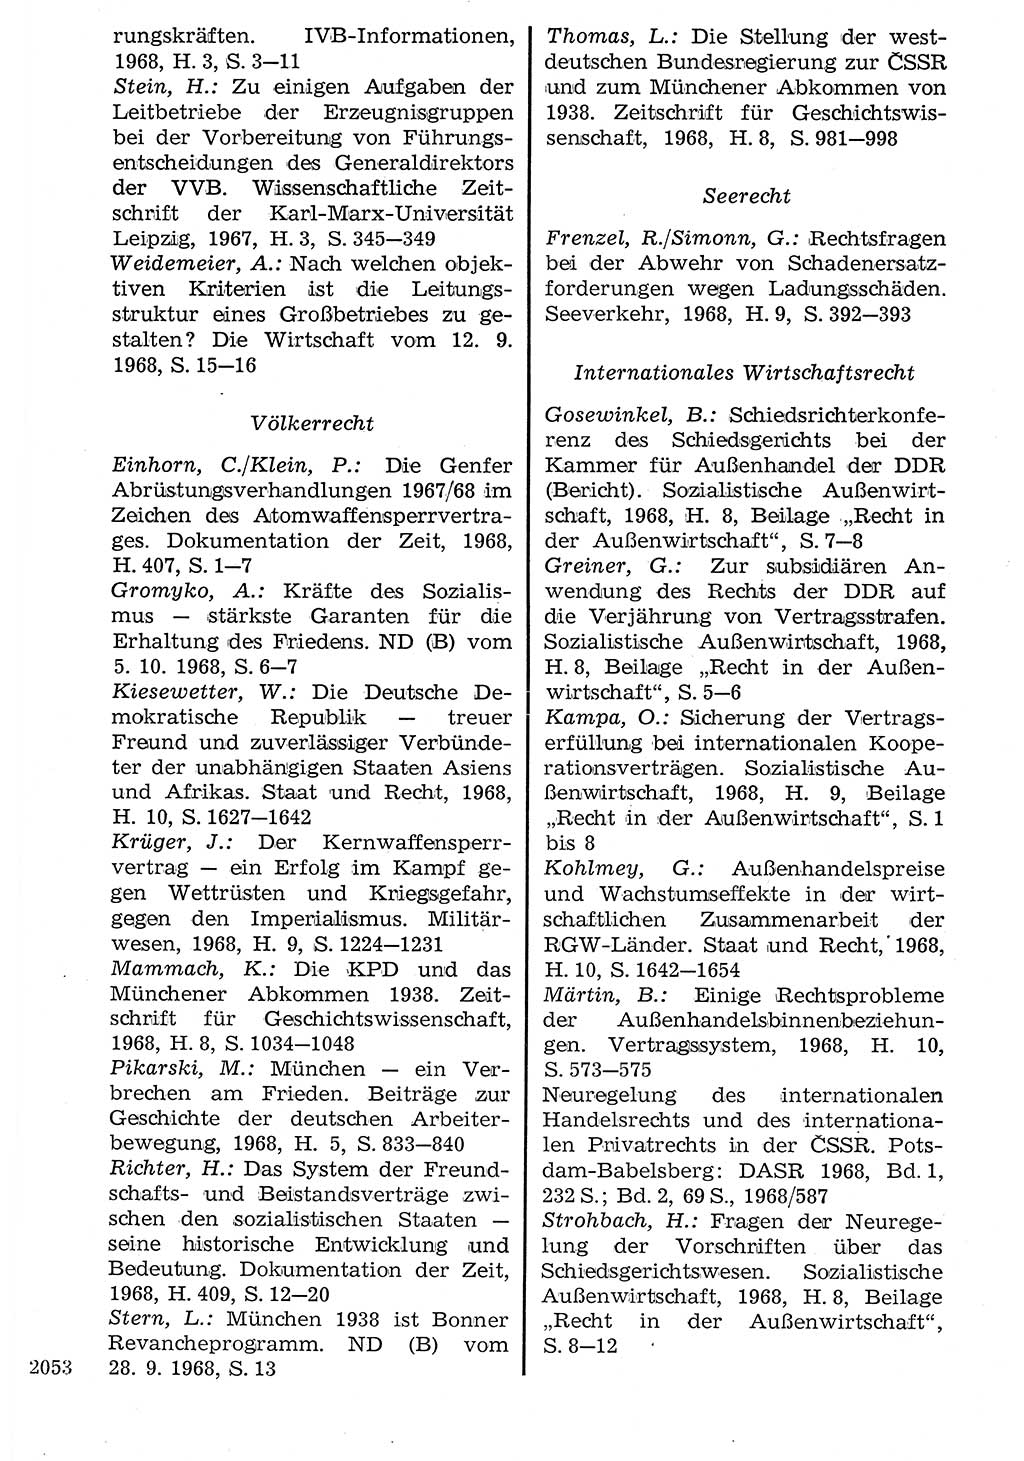 Staat und Recht (StuR), 17. Jahrgang [Deutsche Demokratische Republik (DDR)] 1968, Seite 2053 (StuR DDR 1968, S. 2053)